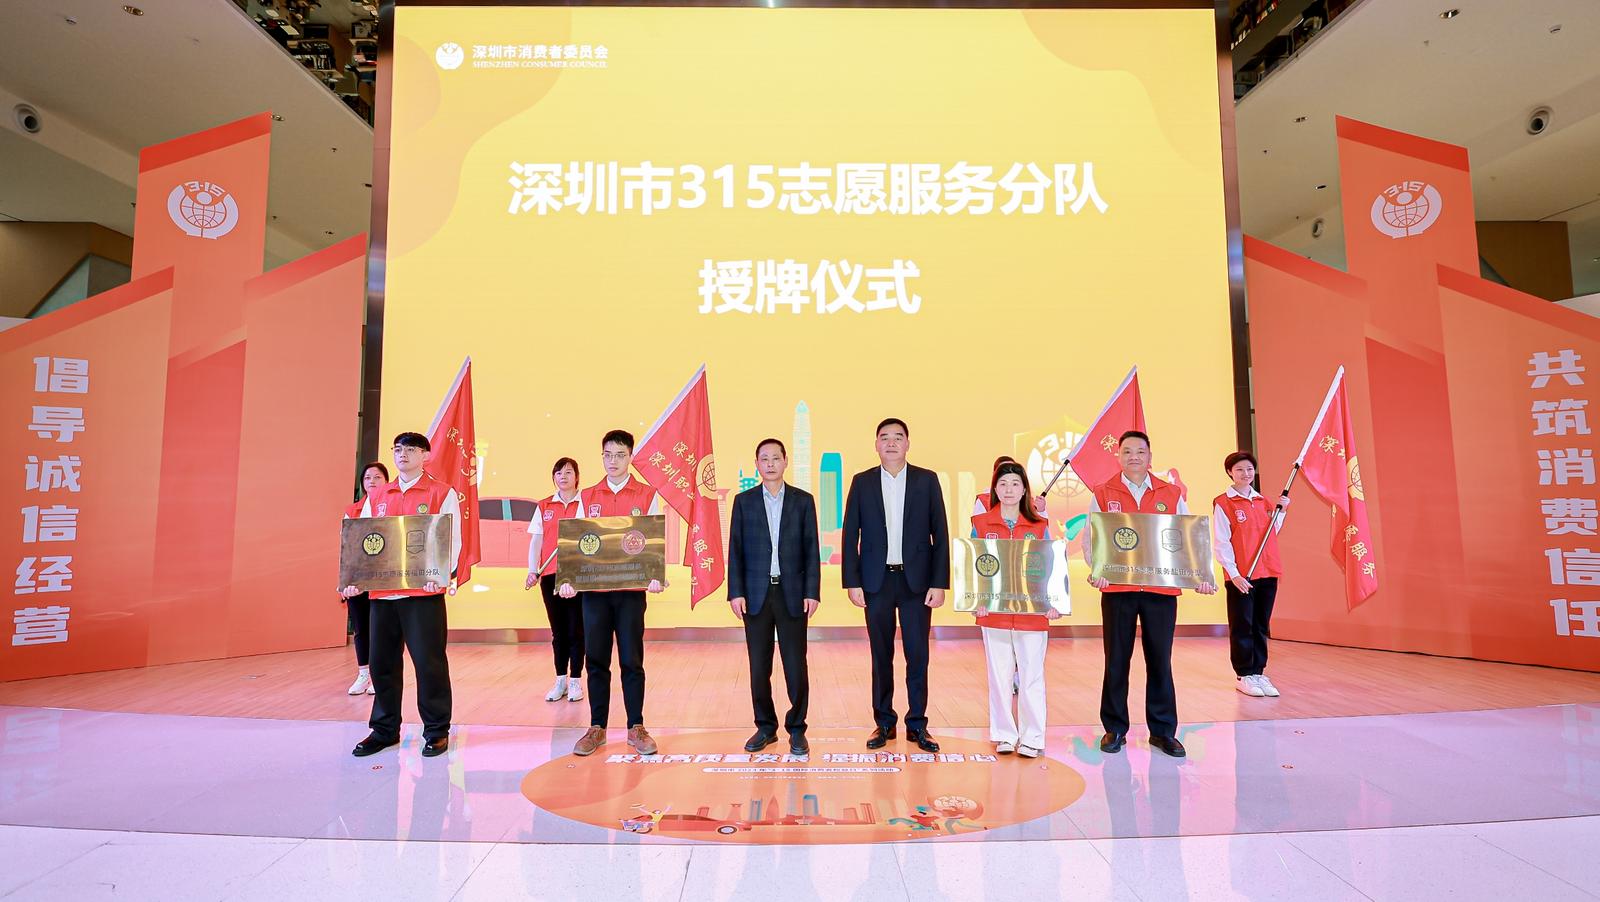 【3·15報道】深圳市消費者委員會正式組建首批深圳市315志愿服務高校分隊和區分隊